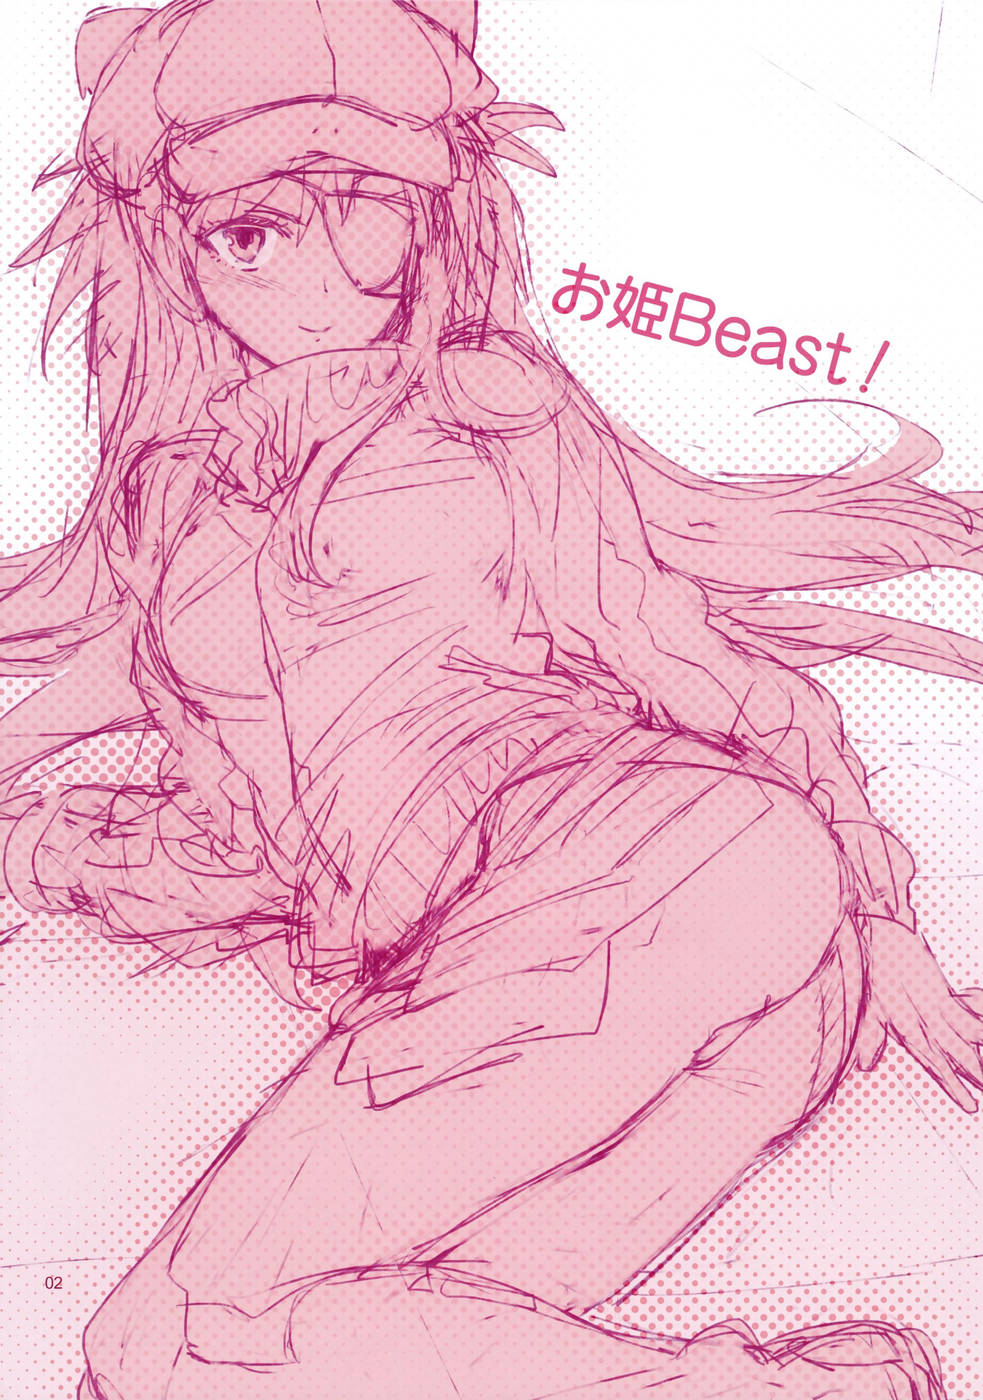 Hentai Manga Comic-v22m-Ohime Beast!-Read-2